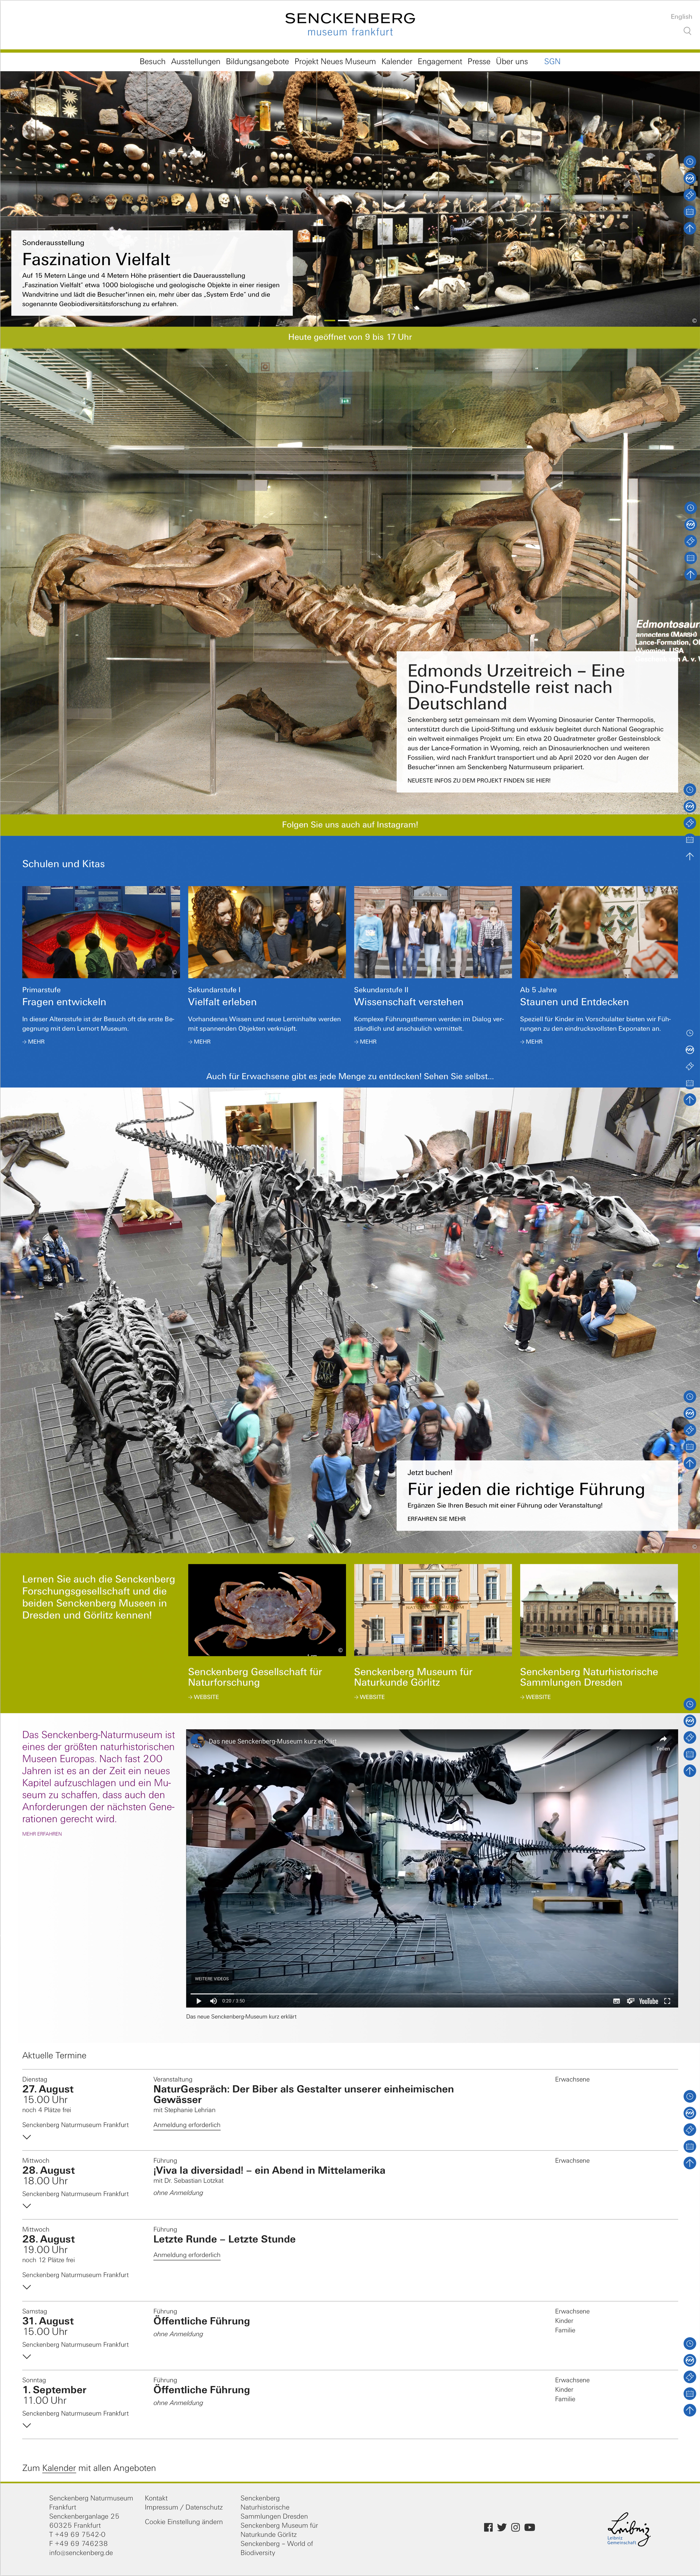 Responsive Webdesign - Gestaltung und Programmierung Websitefamilie für die Senckenberg Gesellschaft für Naturforschung